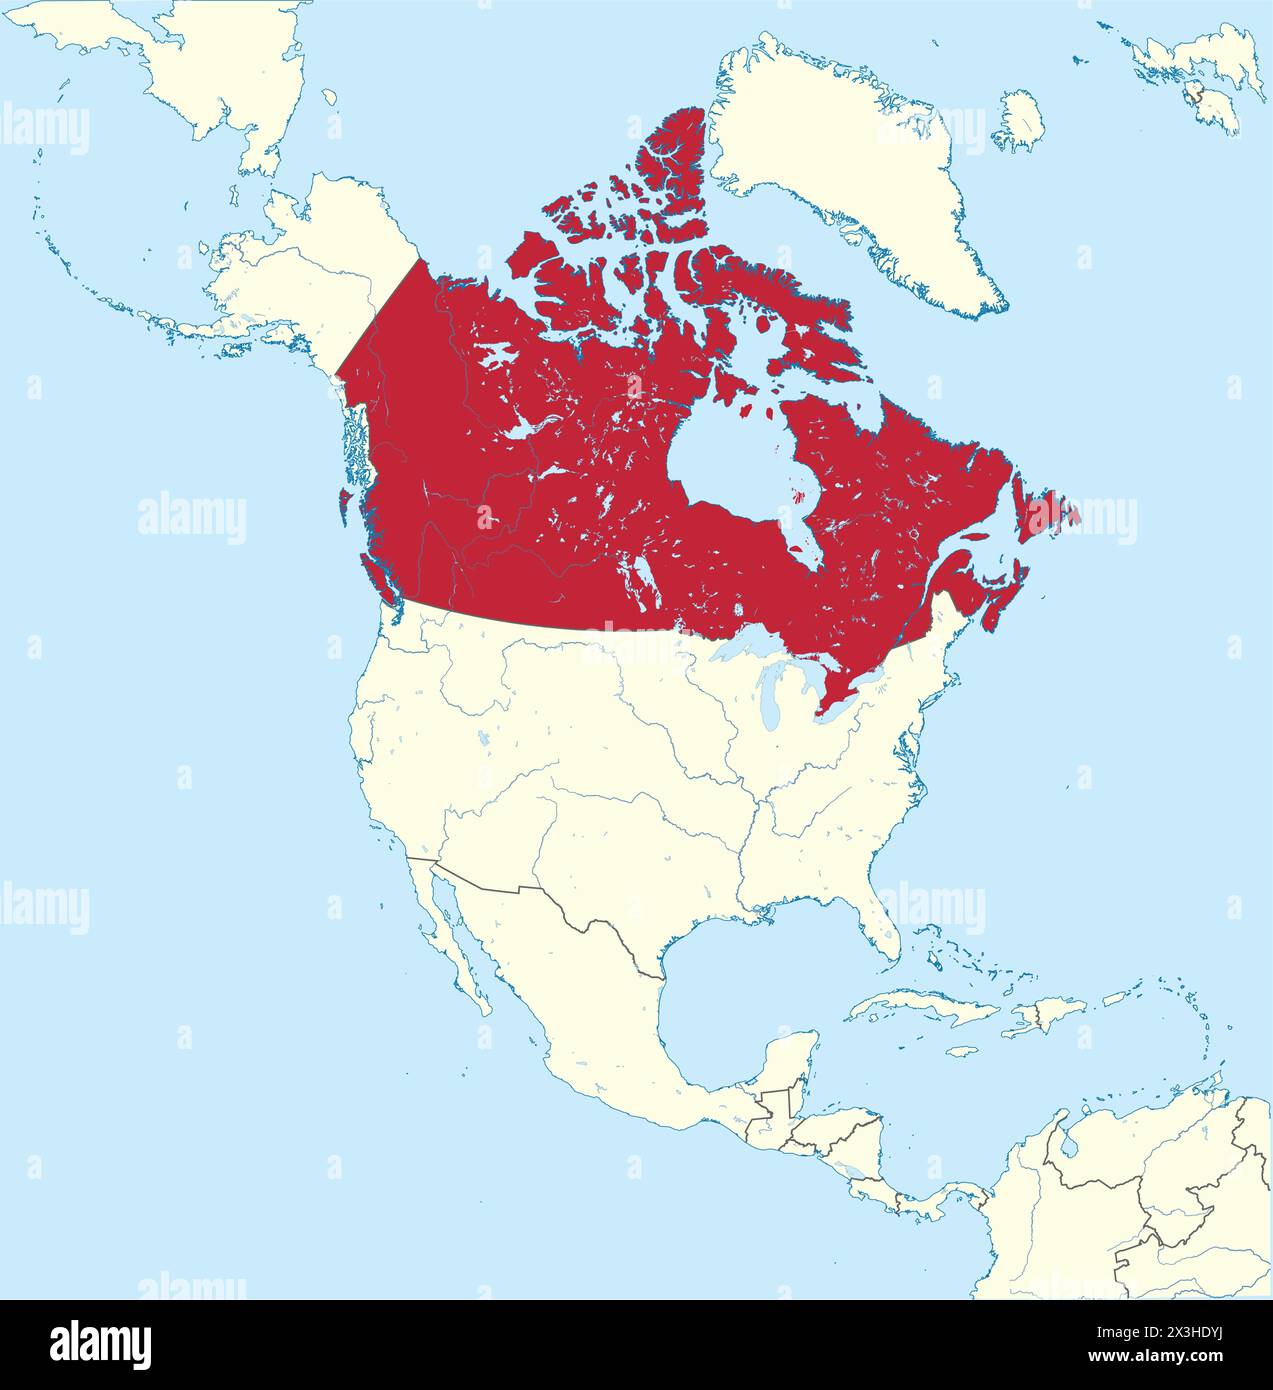 Rote Karte KANADAS Inside beige Karte des nordamerikanischen Kontinents Stock Vektor